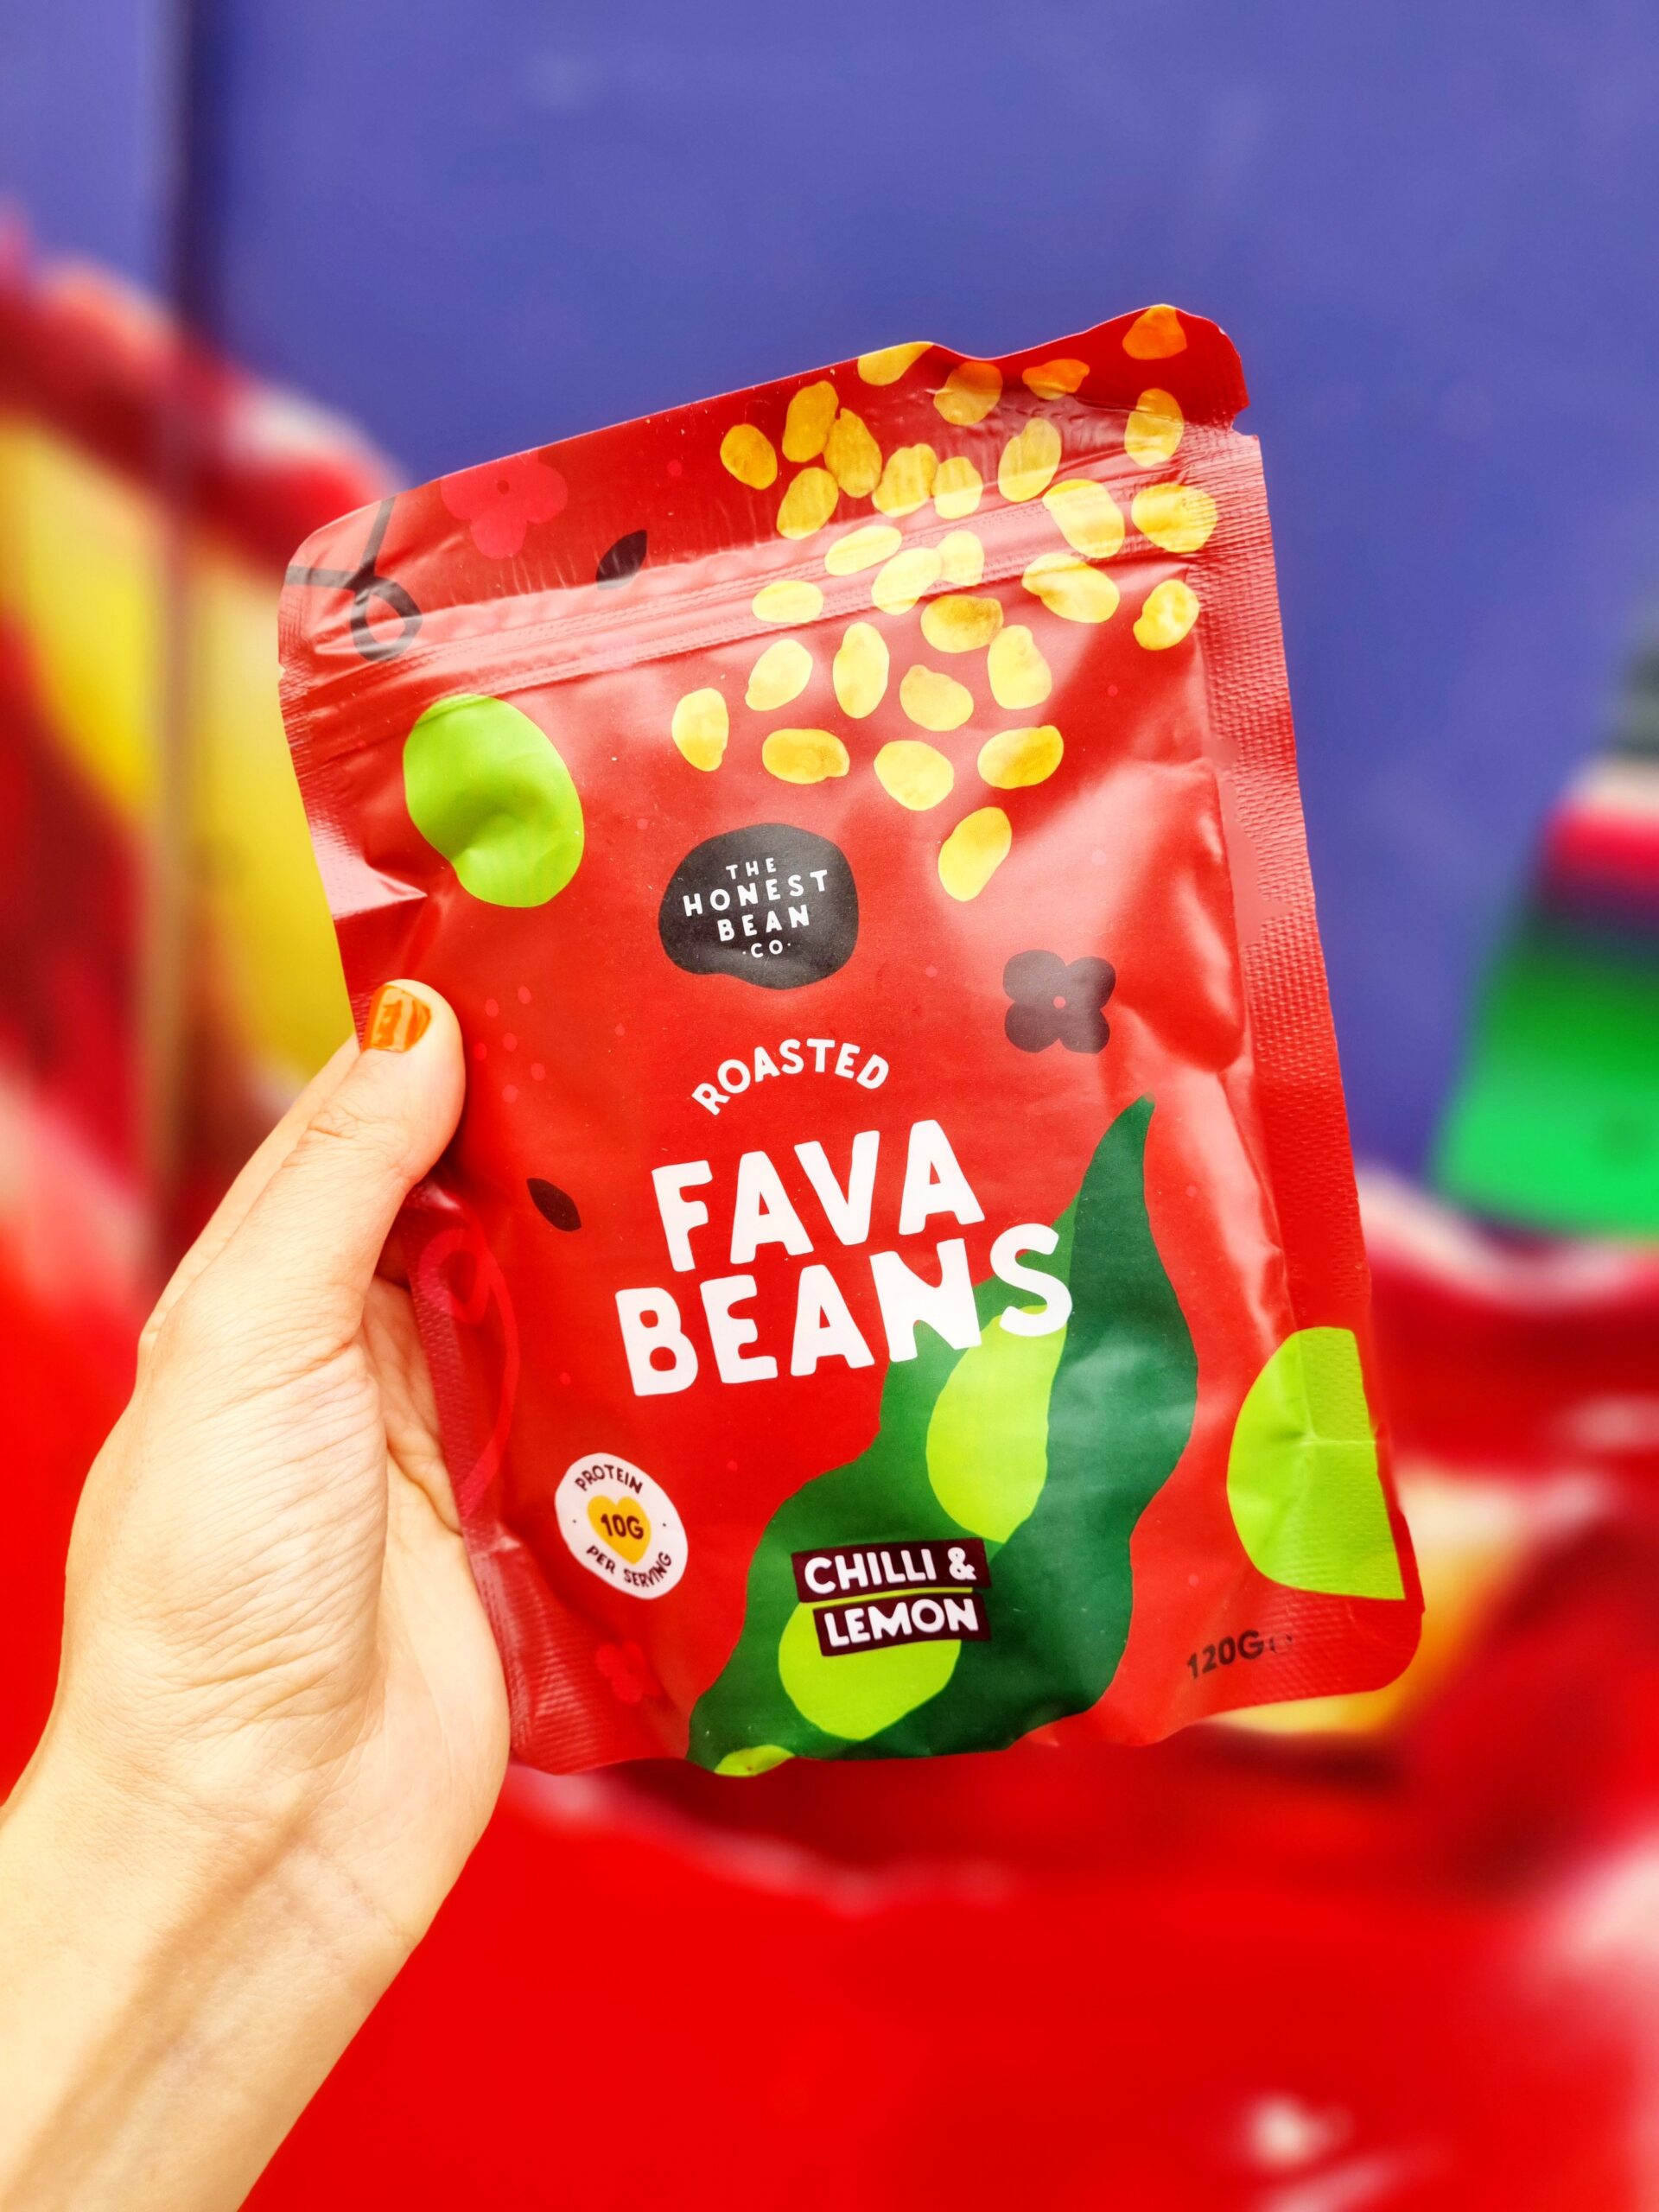 <img src="fava beans.jpg" alt="fava beans chilli and lemon snack"/>